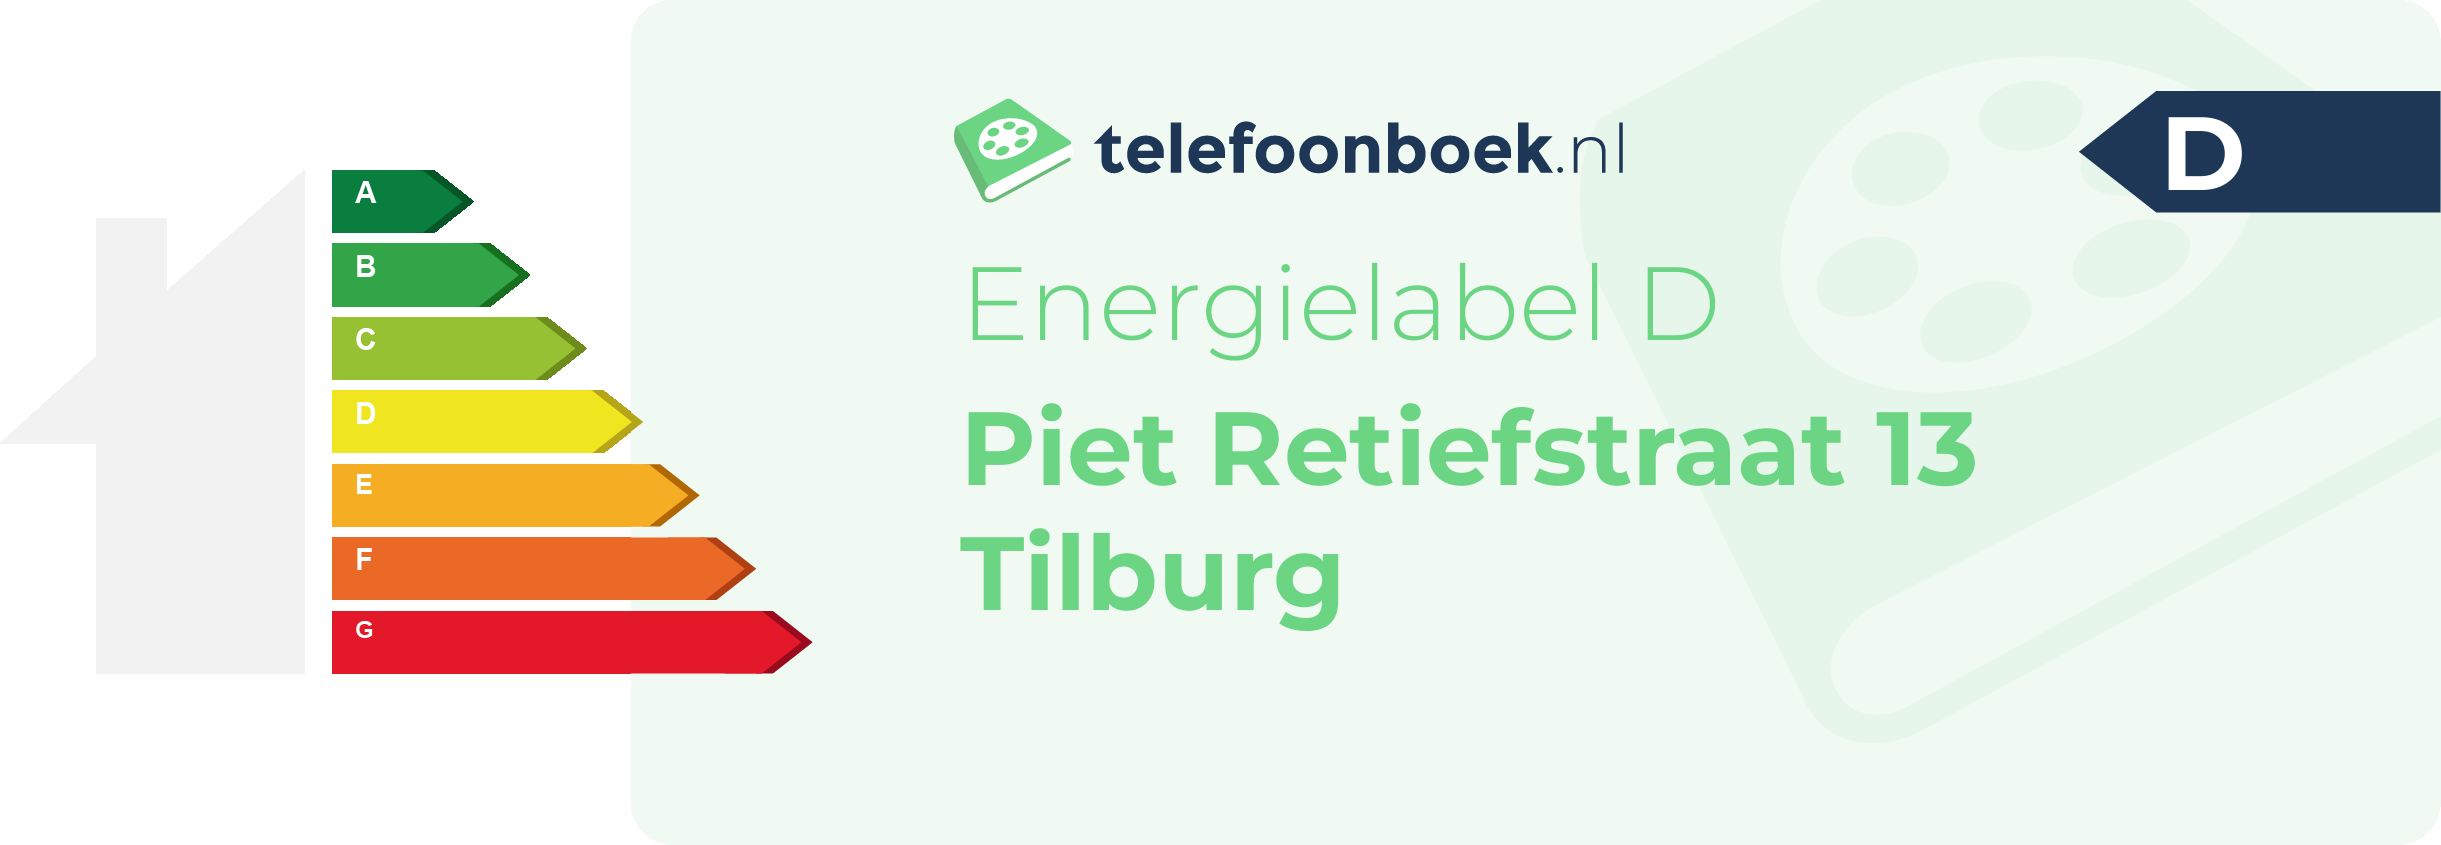 Energielabel Piet Retiefstraat 13 Tilburg